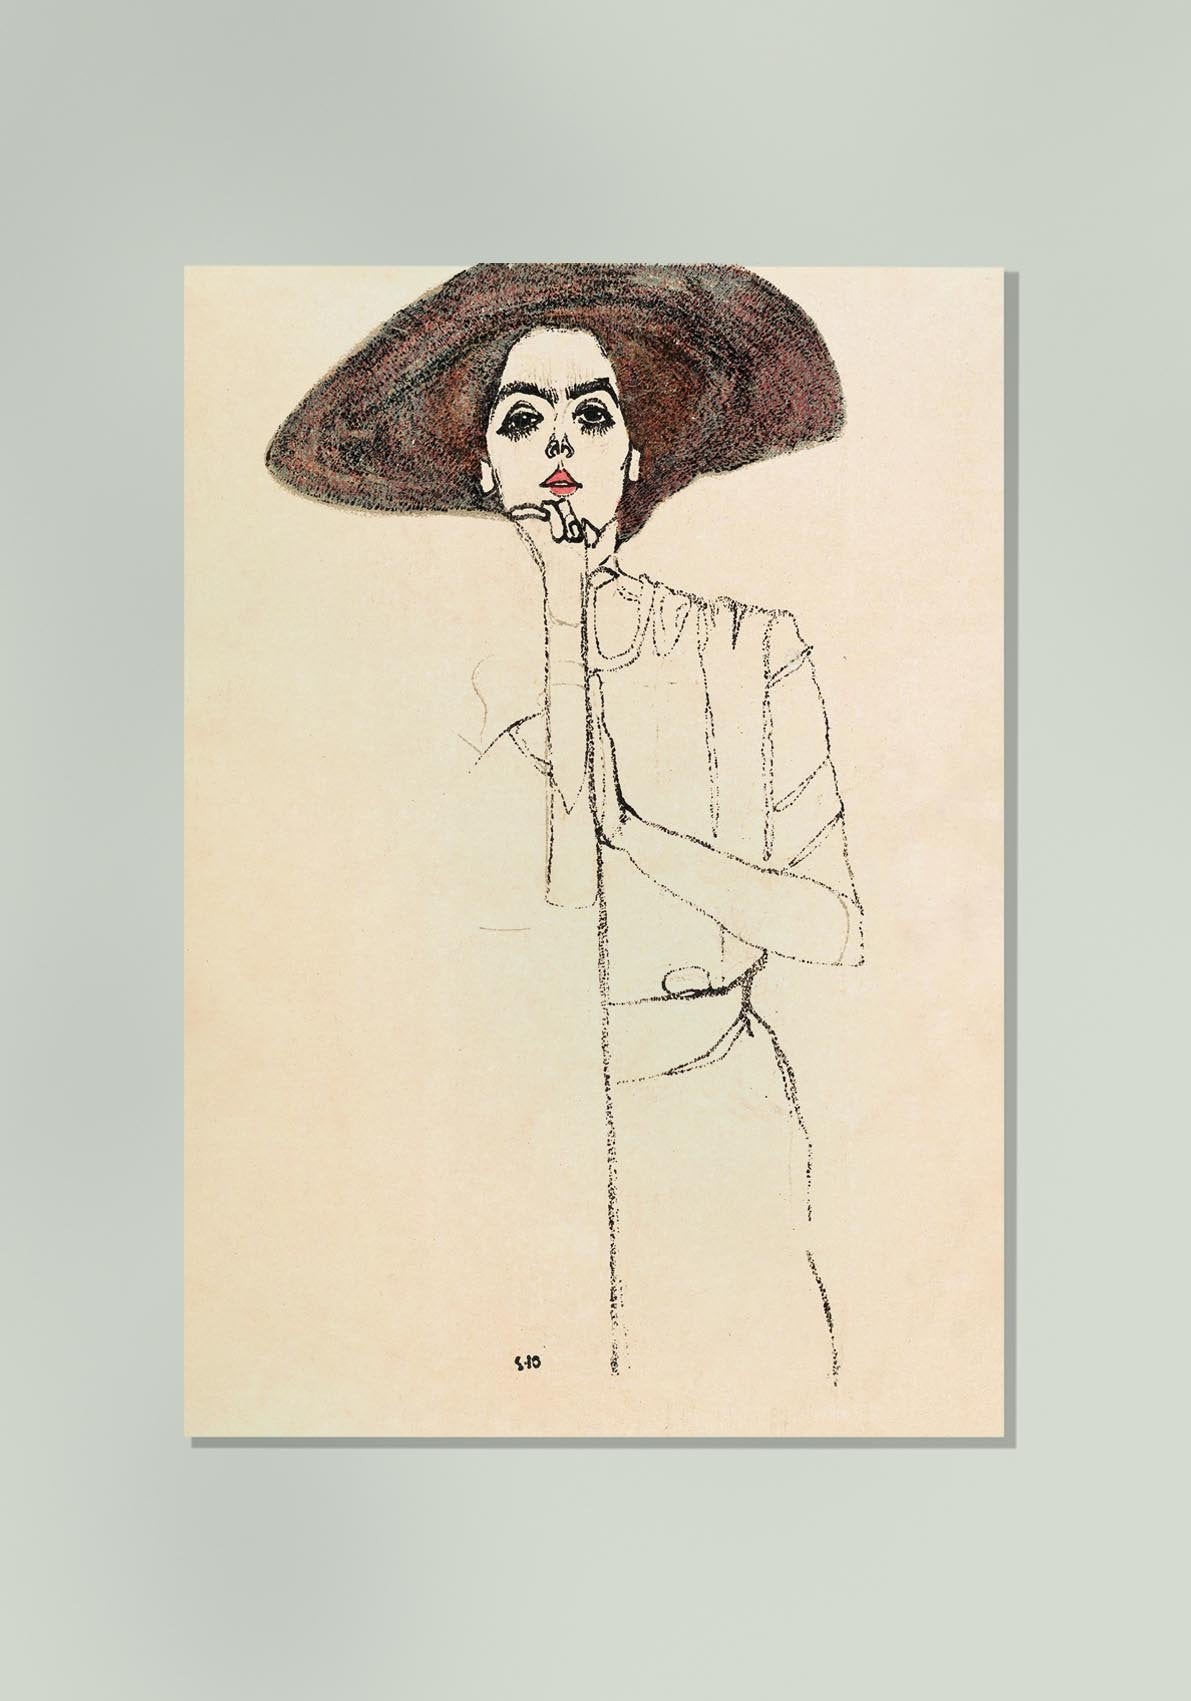 Portrait of a Woman (1910) by Egon Schiele